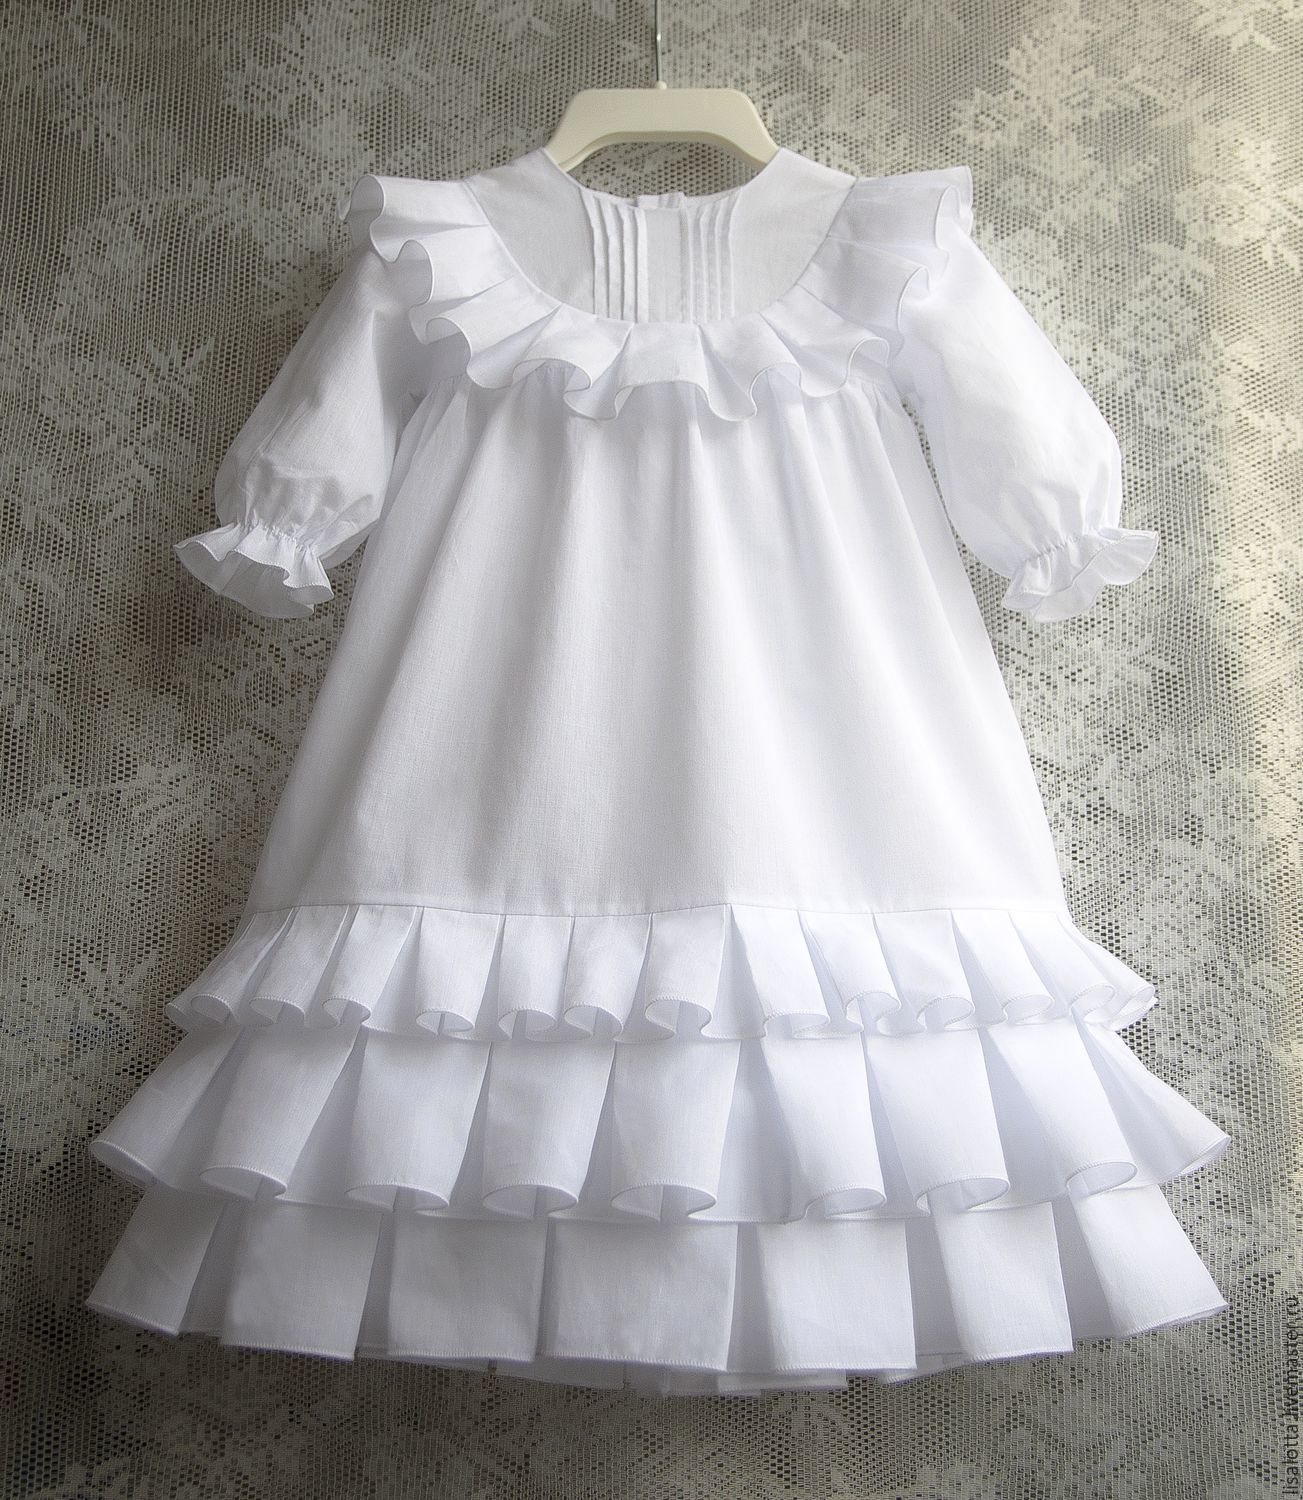 Купить крестильное платье для девочки - интернет-магазин Choupette